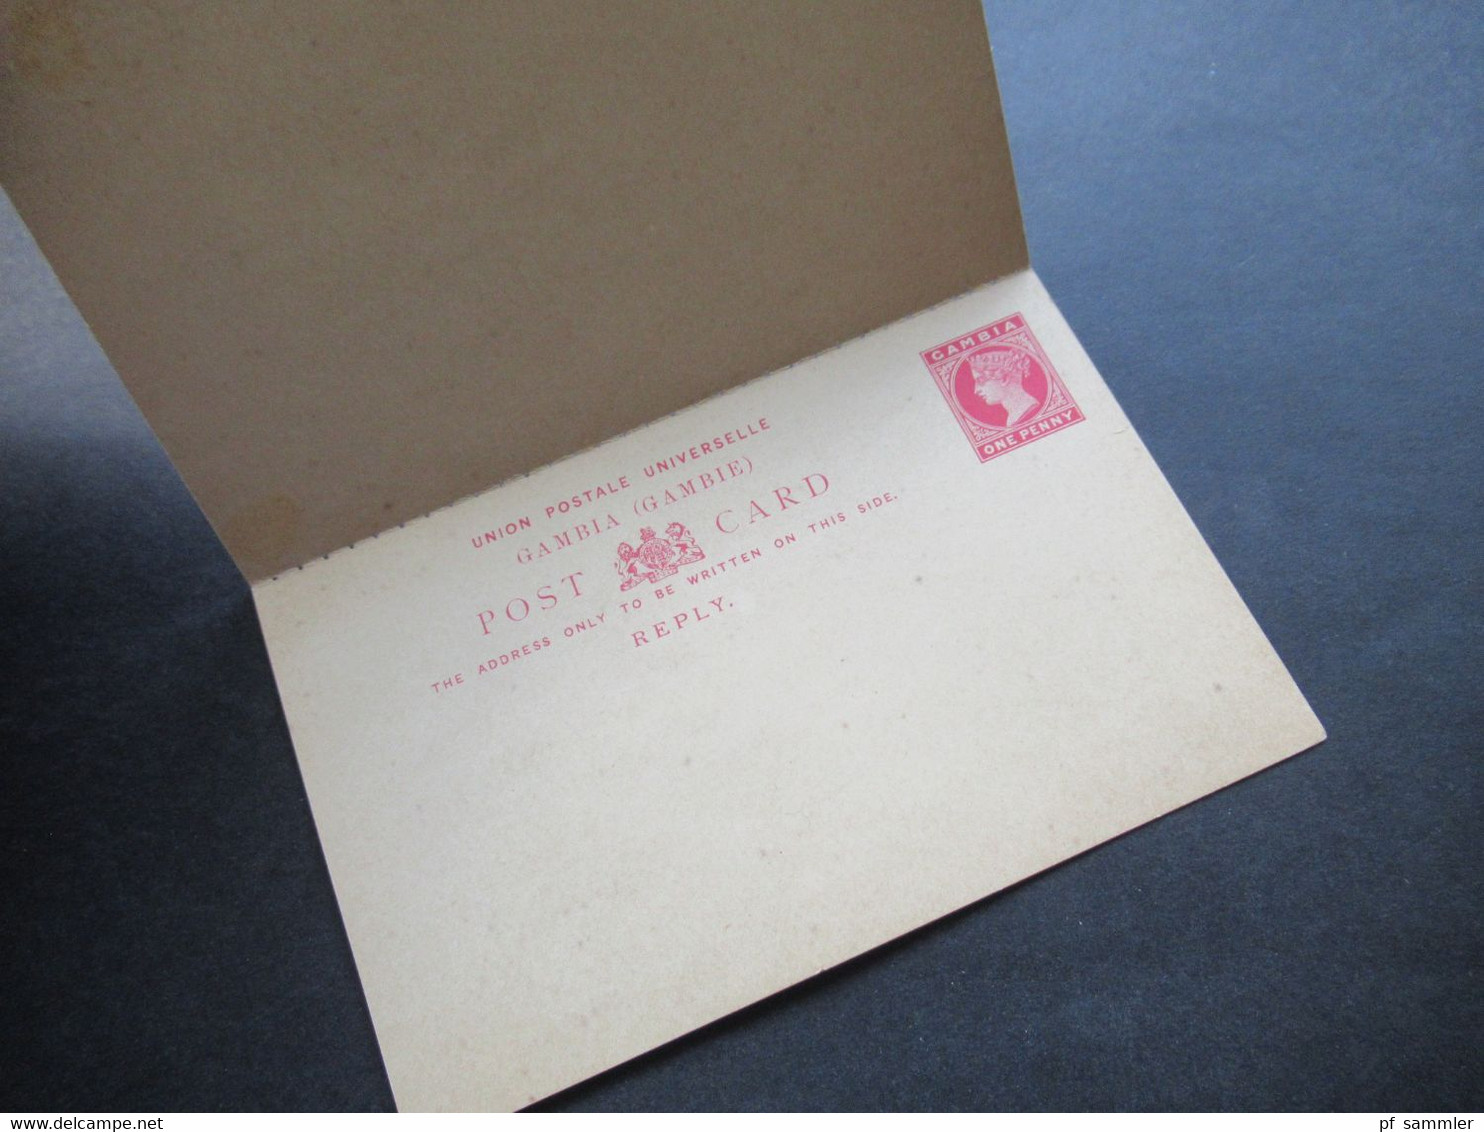 Post Card Gambia um 1888 Ganzsachen / Stationary 3 Stück davon 1x Doppelkarte alle ungebraucht